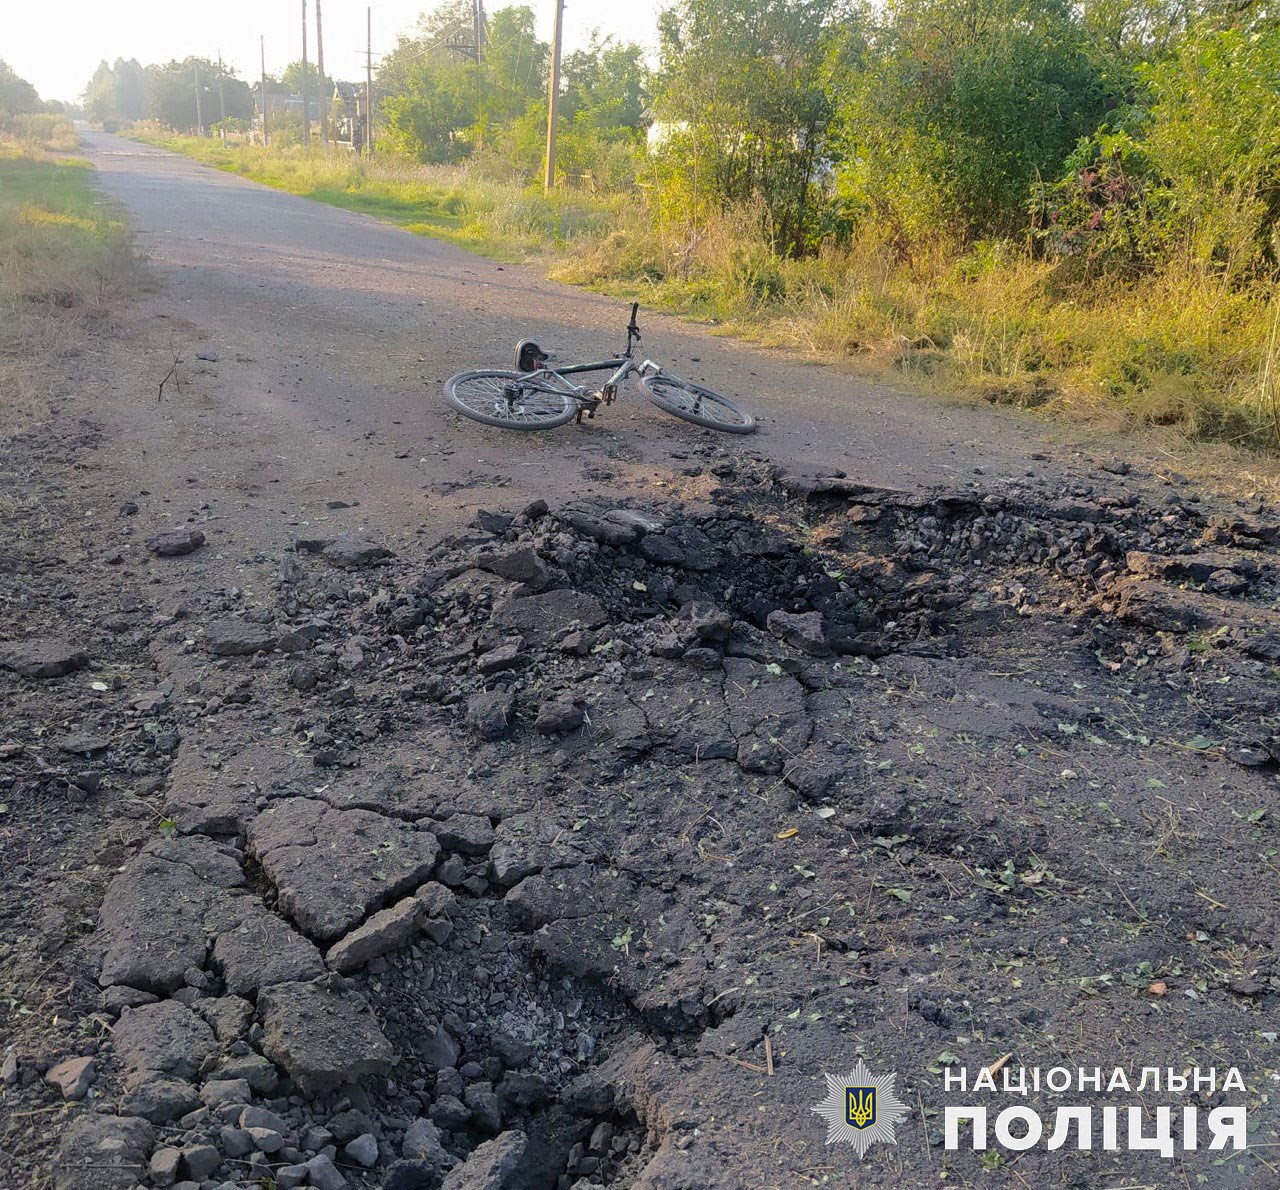 Велосипед, оставленный жителем Донецкой области во время обстрела дороги 28 августа